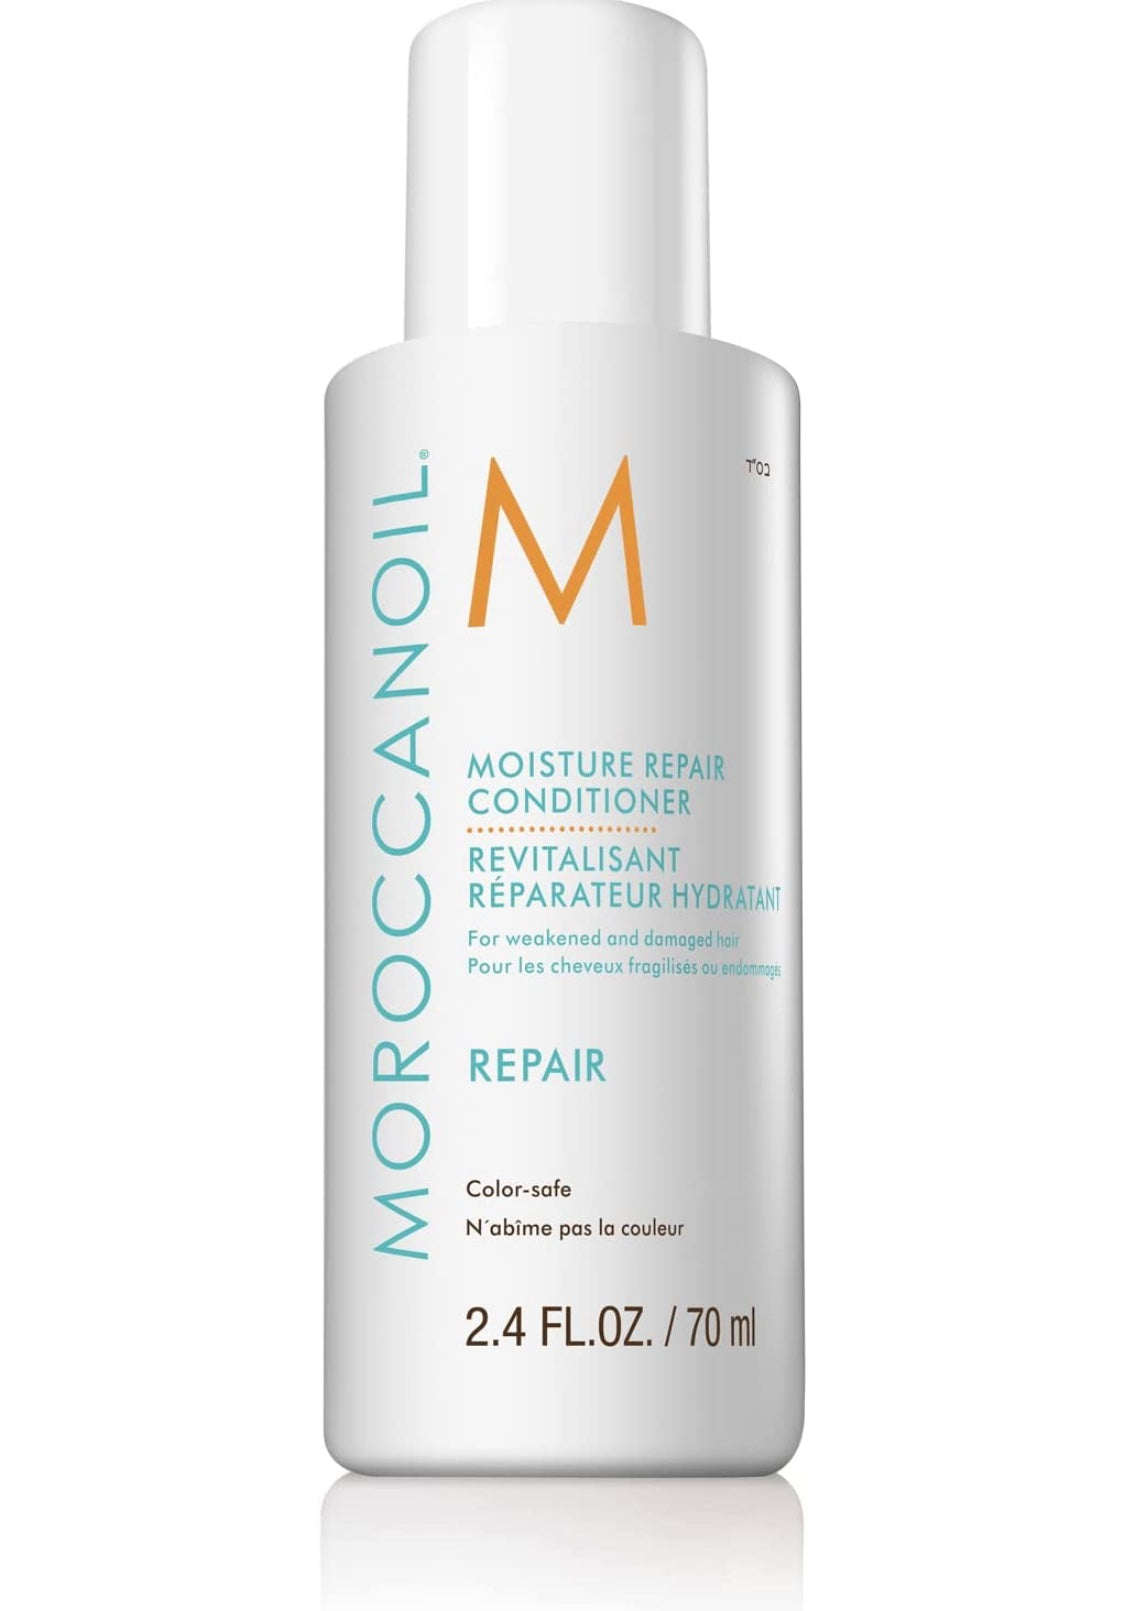 Moroccanoil - Moisture repair conditioner 2.4 fl. oz./ 70 ml